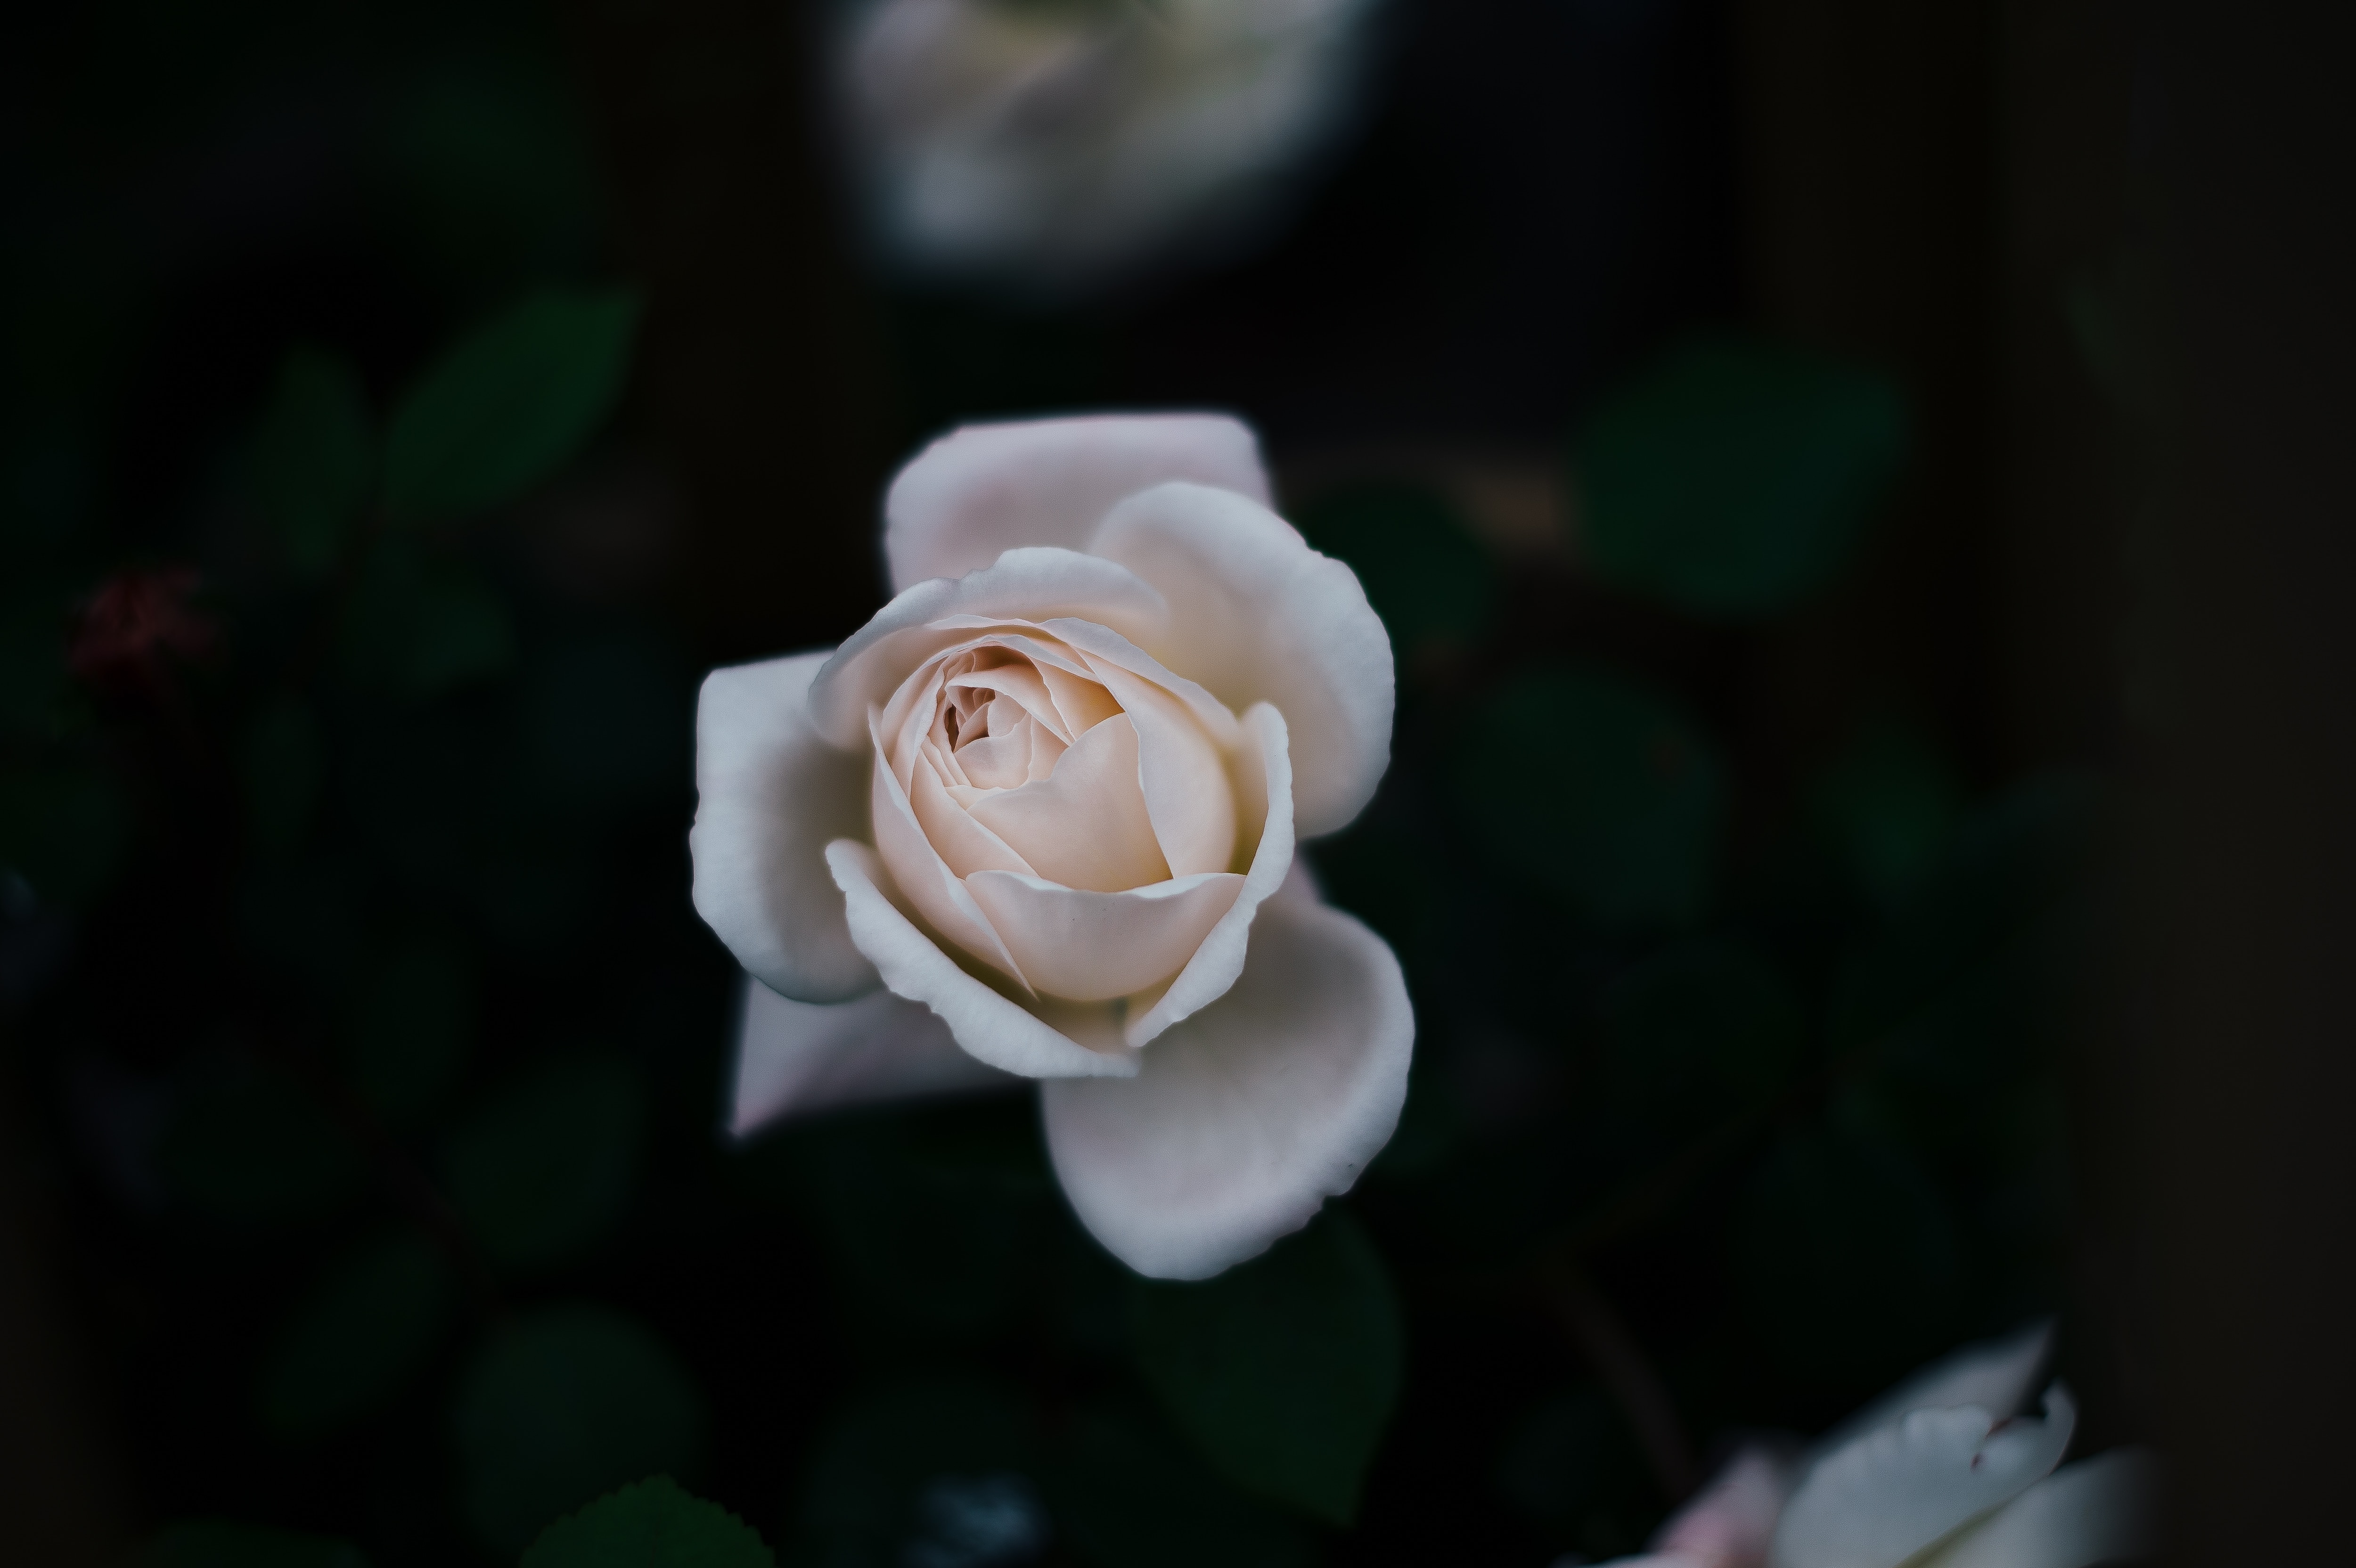 tilt shift lens photography of white rose